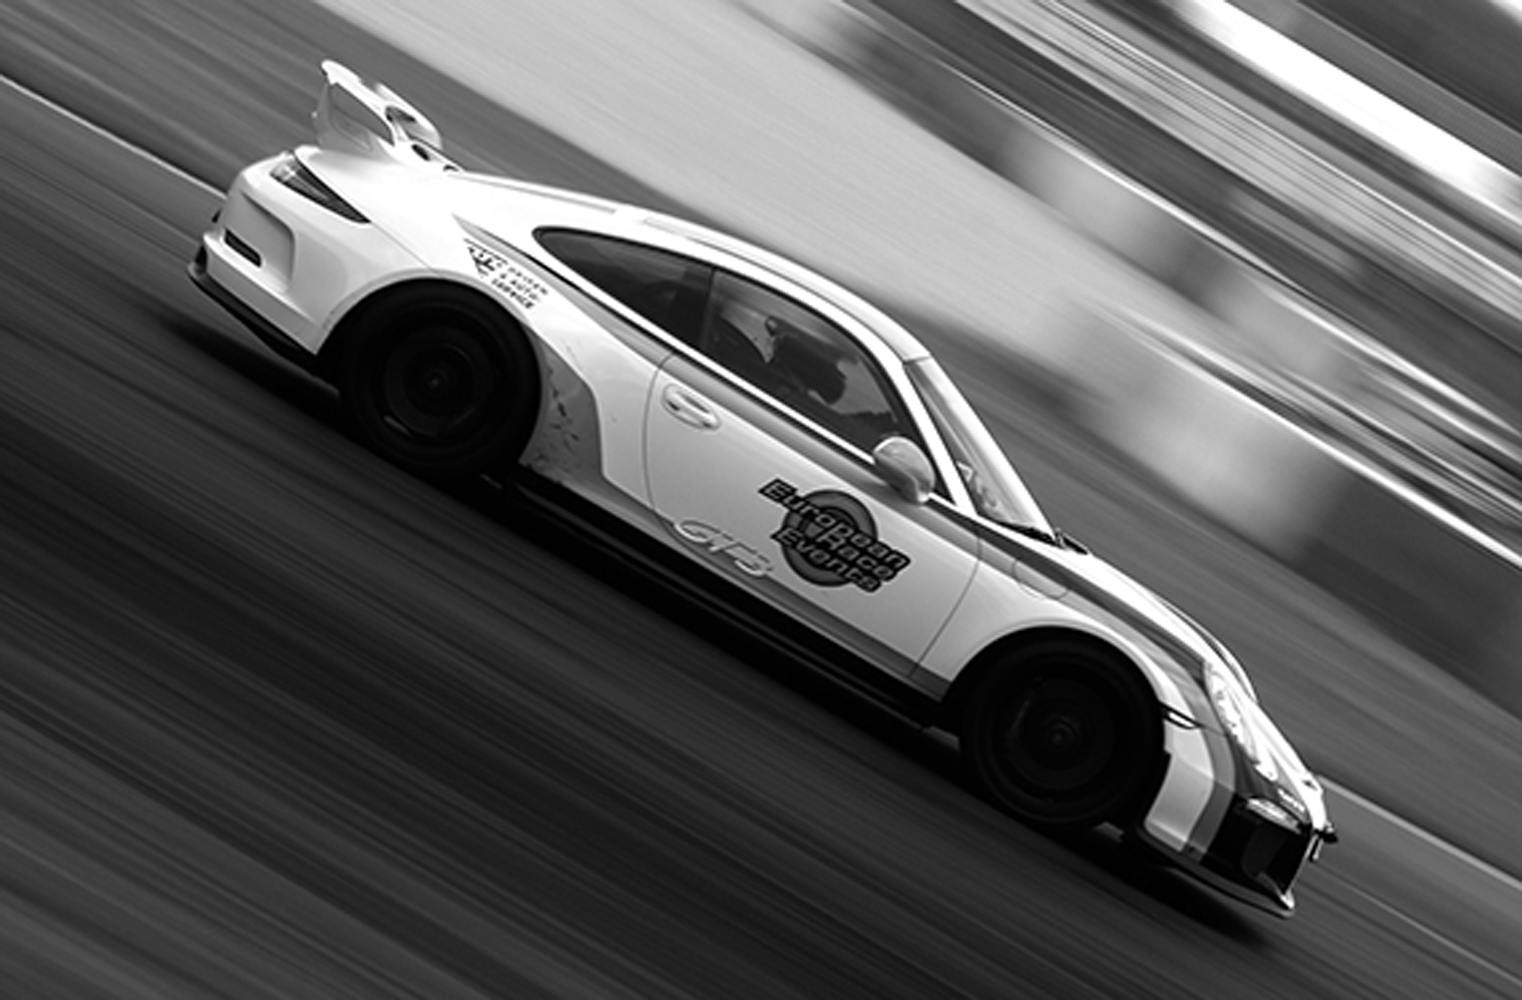 Porsche 991 GT3 fahren | als Pilot am Lausitzring steuern